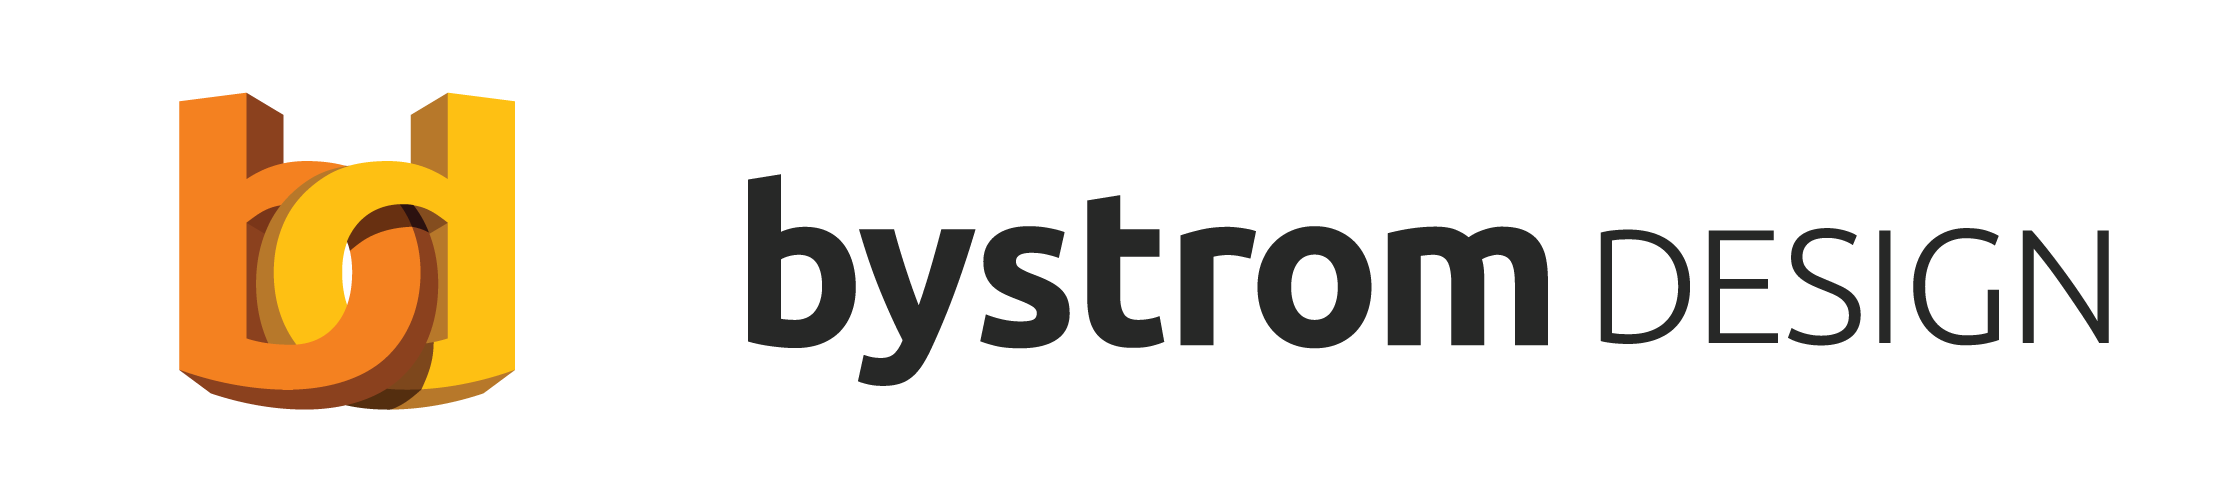 Bystrom Design